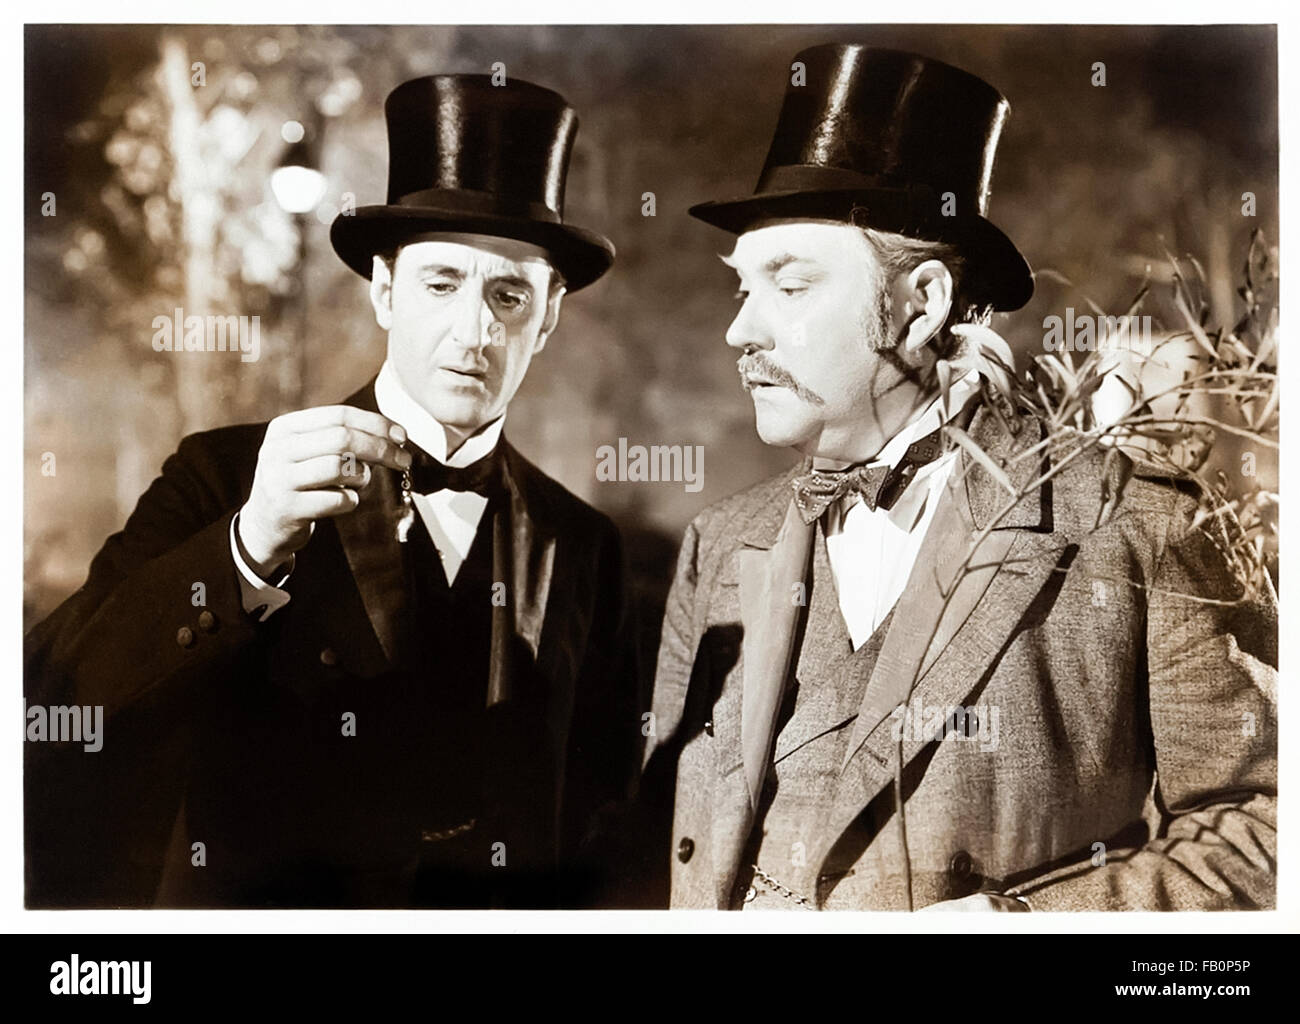 Las aventuras de Sherlock Holmes (1939) protagonizada por Basil Rathbone (Holmes) y Nigel Bruce (Watson). Foto de stock